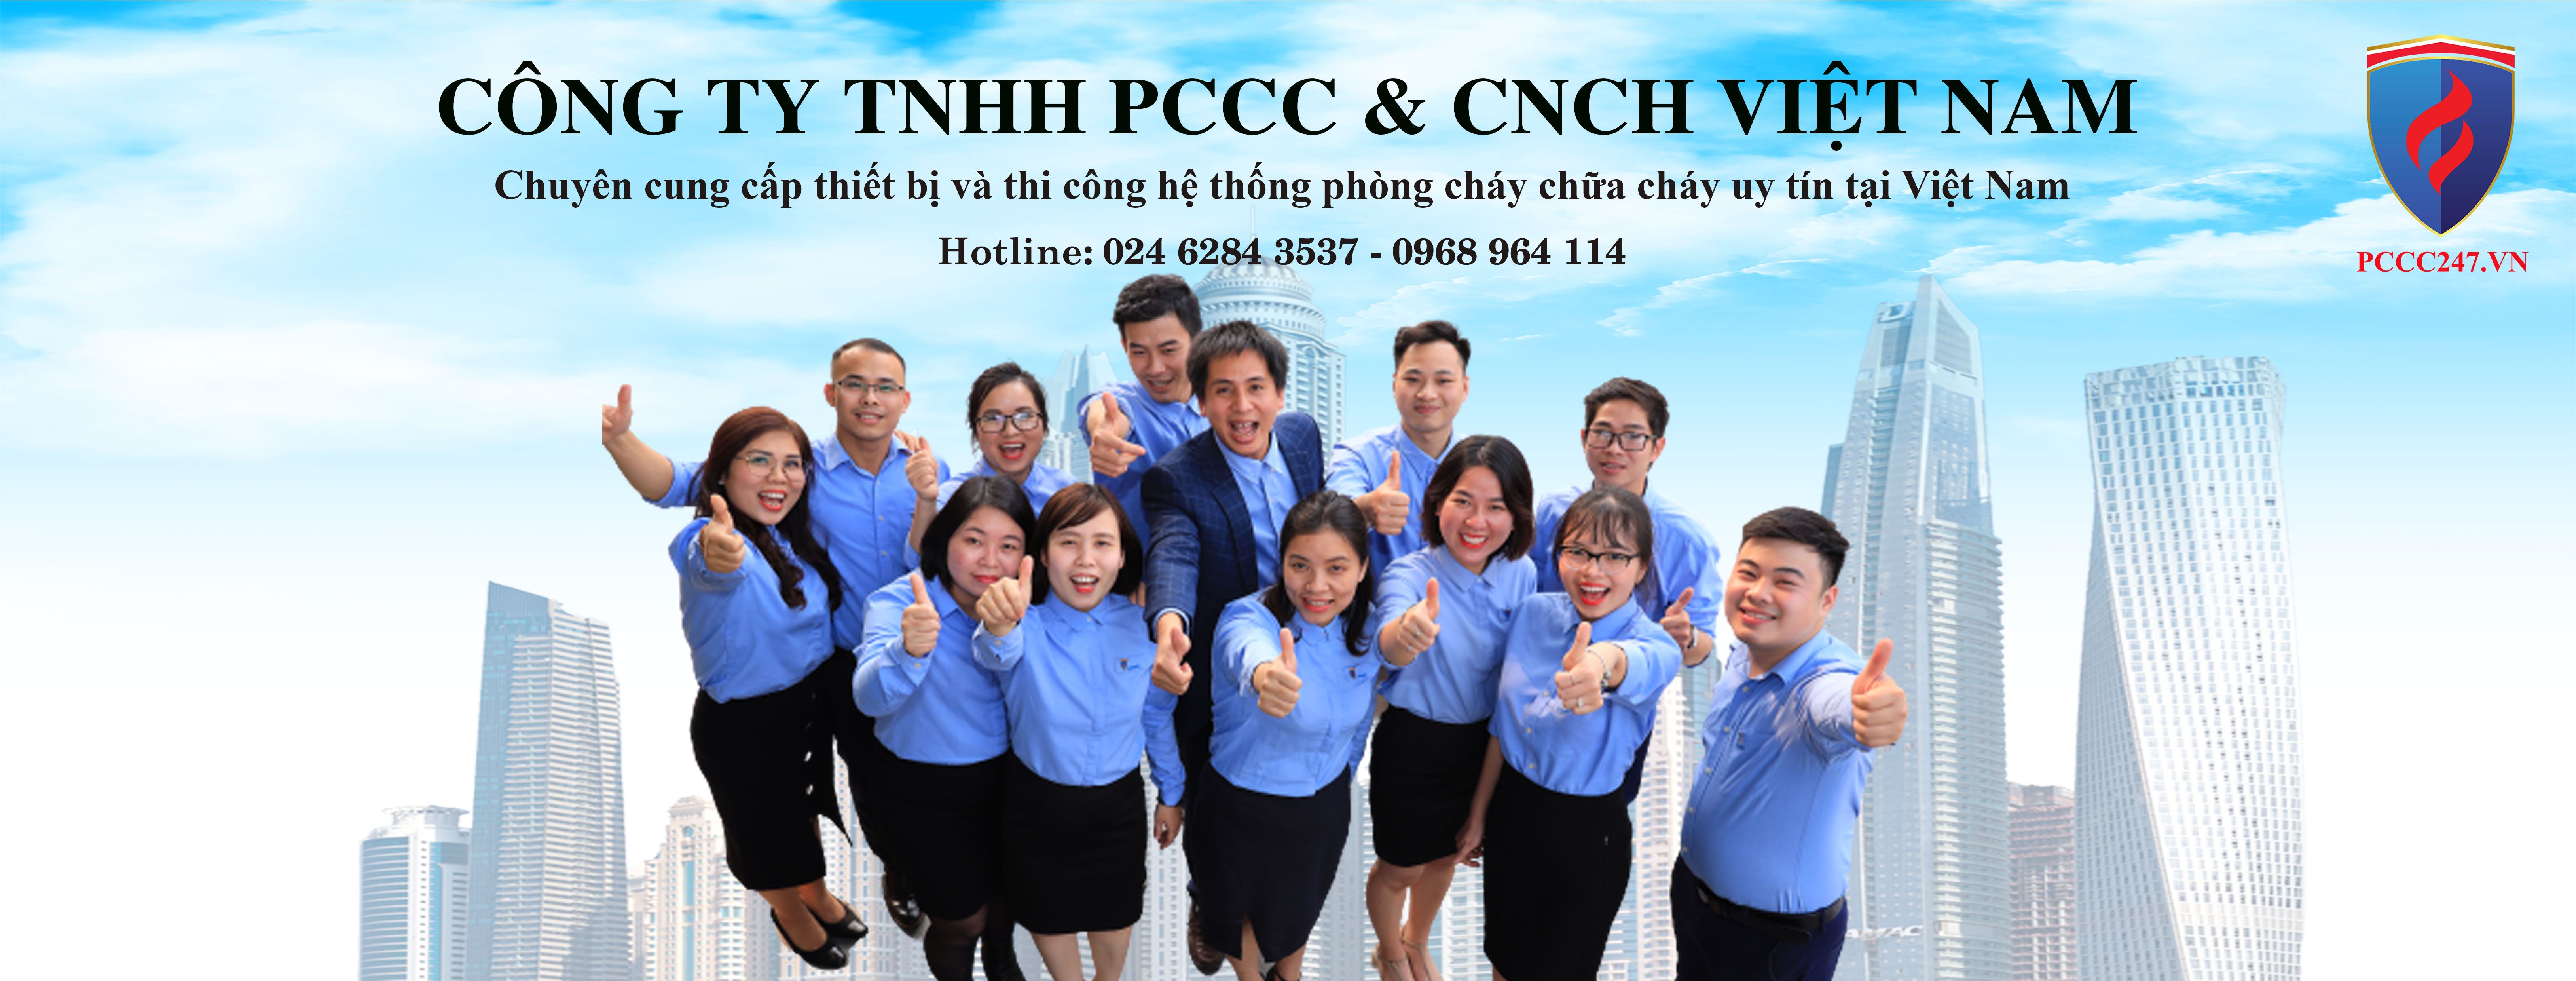 6 Lý do các doanh nghiệp nên lựa chọn công ty TNHH PCCC & CNCH Việt Nam